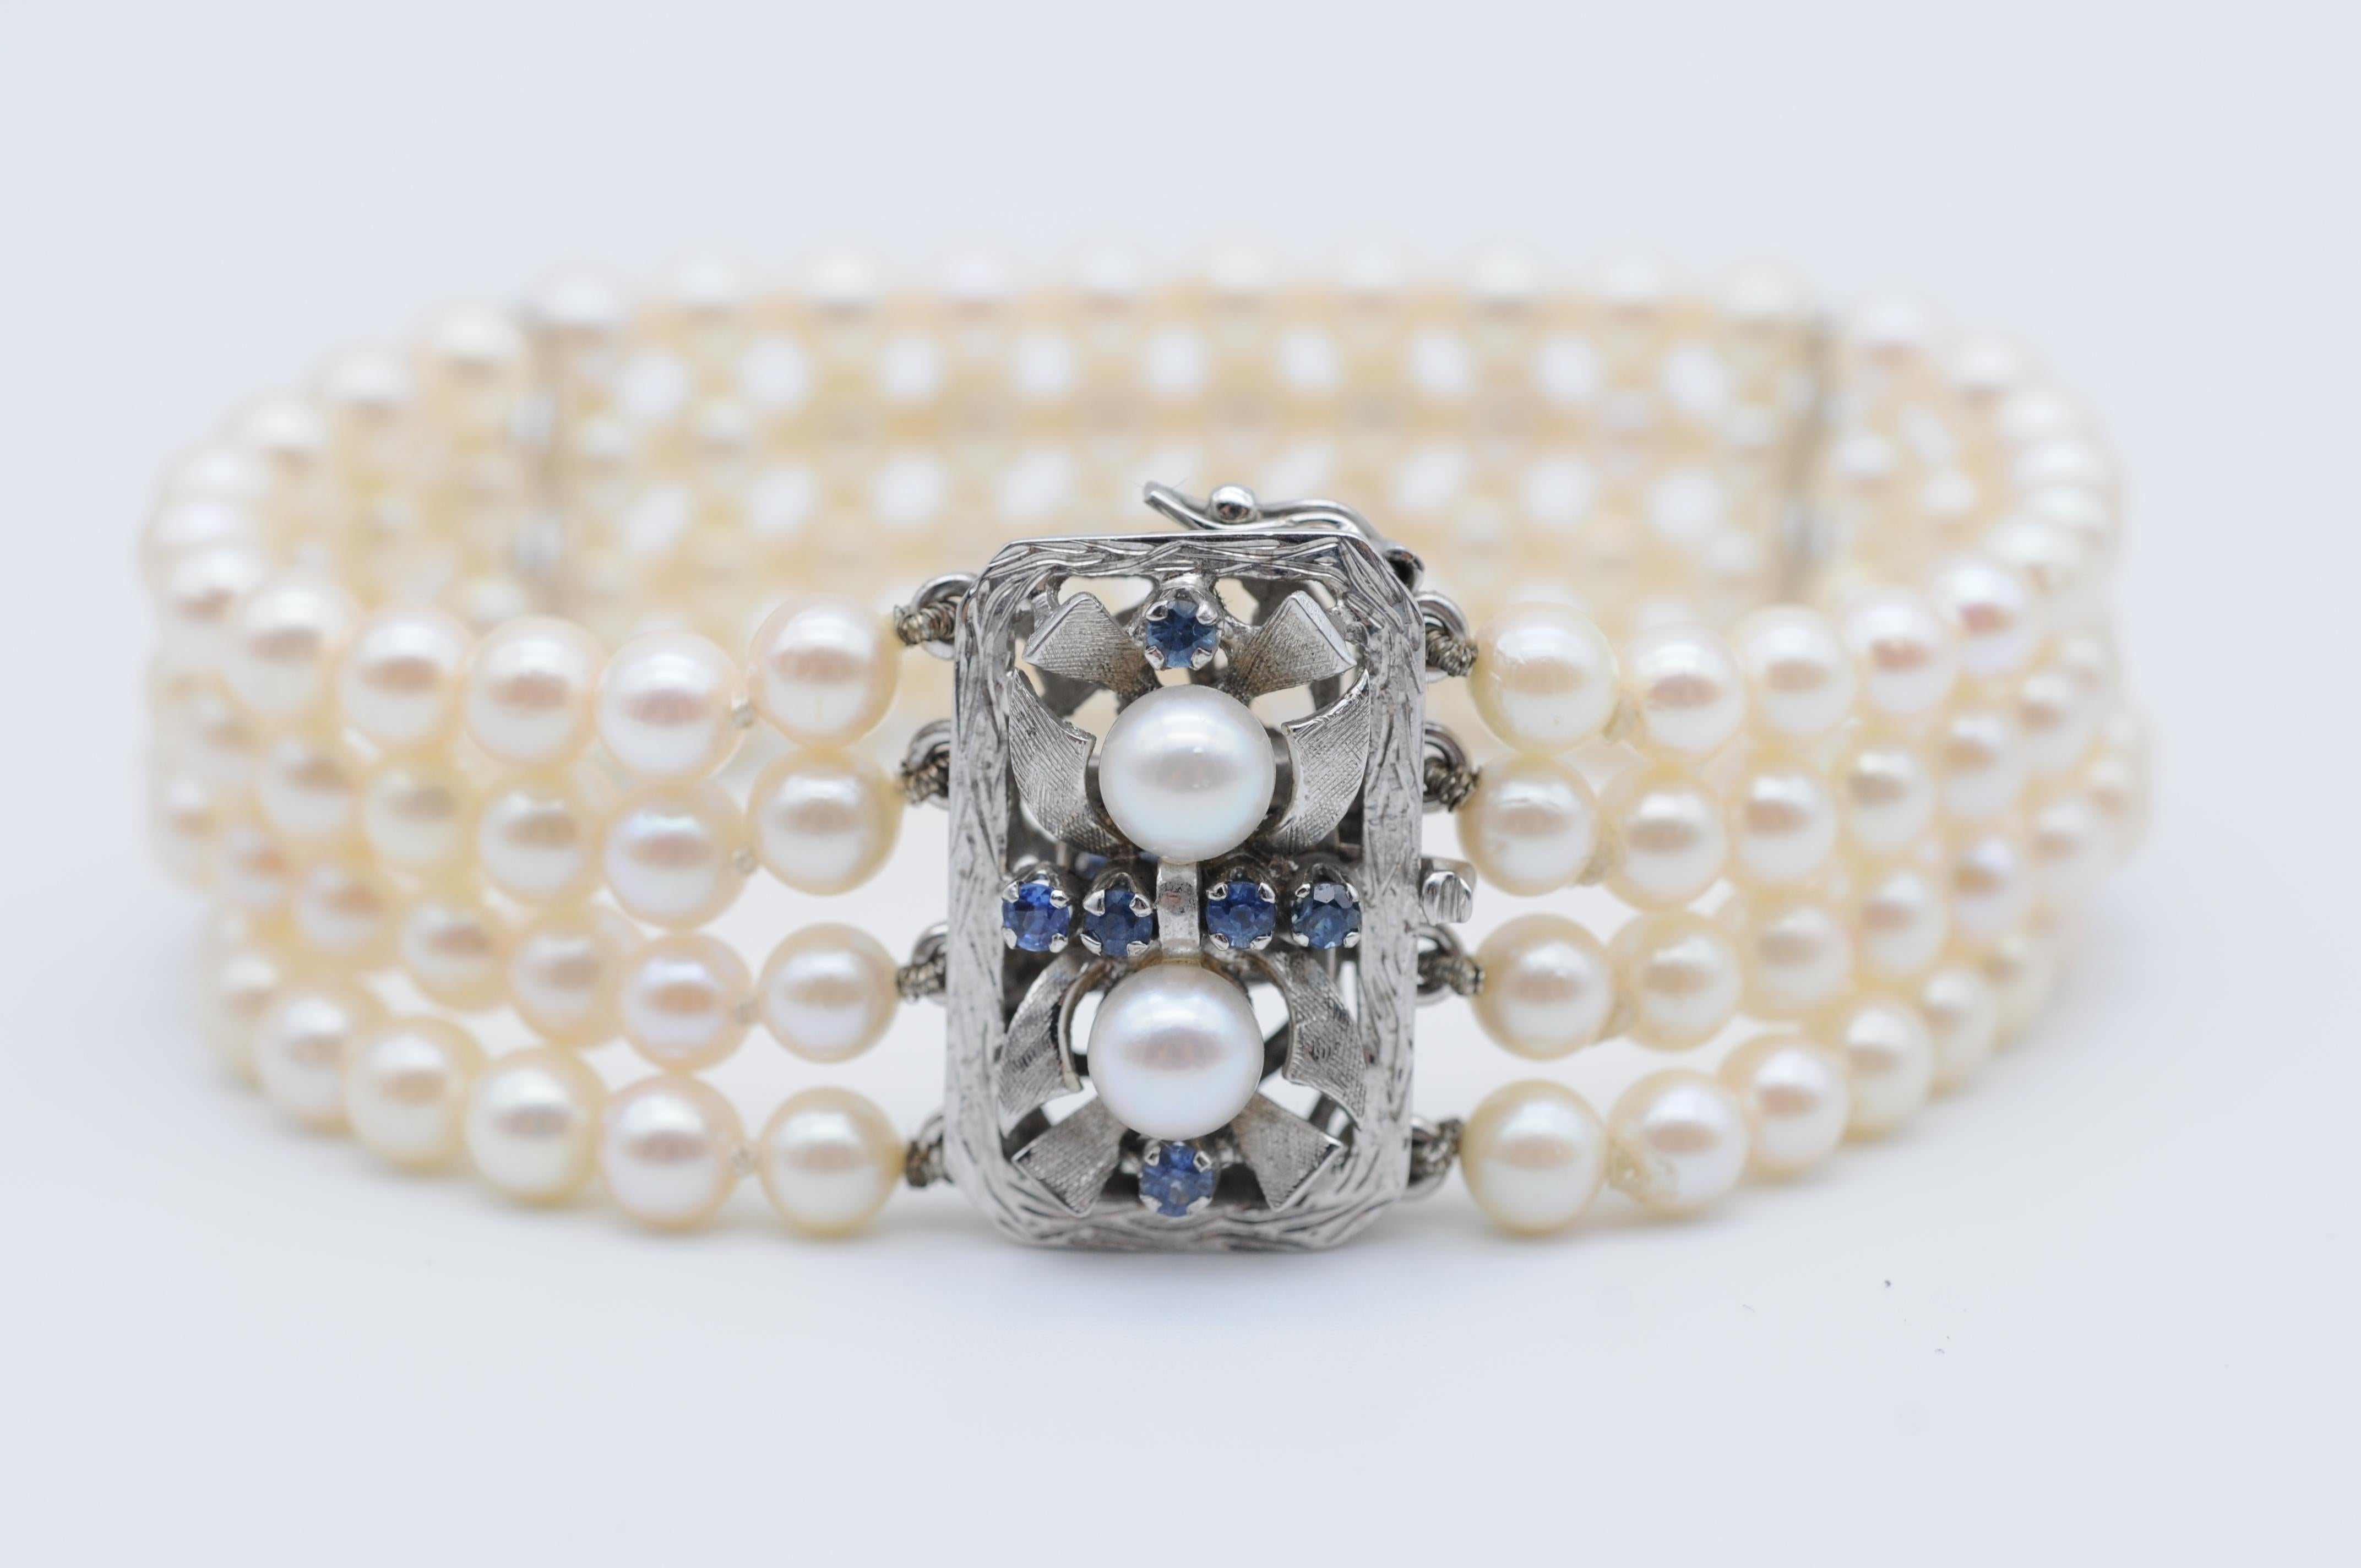 Laissez-vous séduire par l'élégance intemporelle de ce magnifique bracelet de perles, confectionné à partir de perles lustrées disposées en une forme symétrique à quatre rangs. Les perles blanches étincelantes ont été soigneusement sélectionnées et